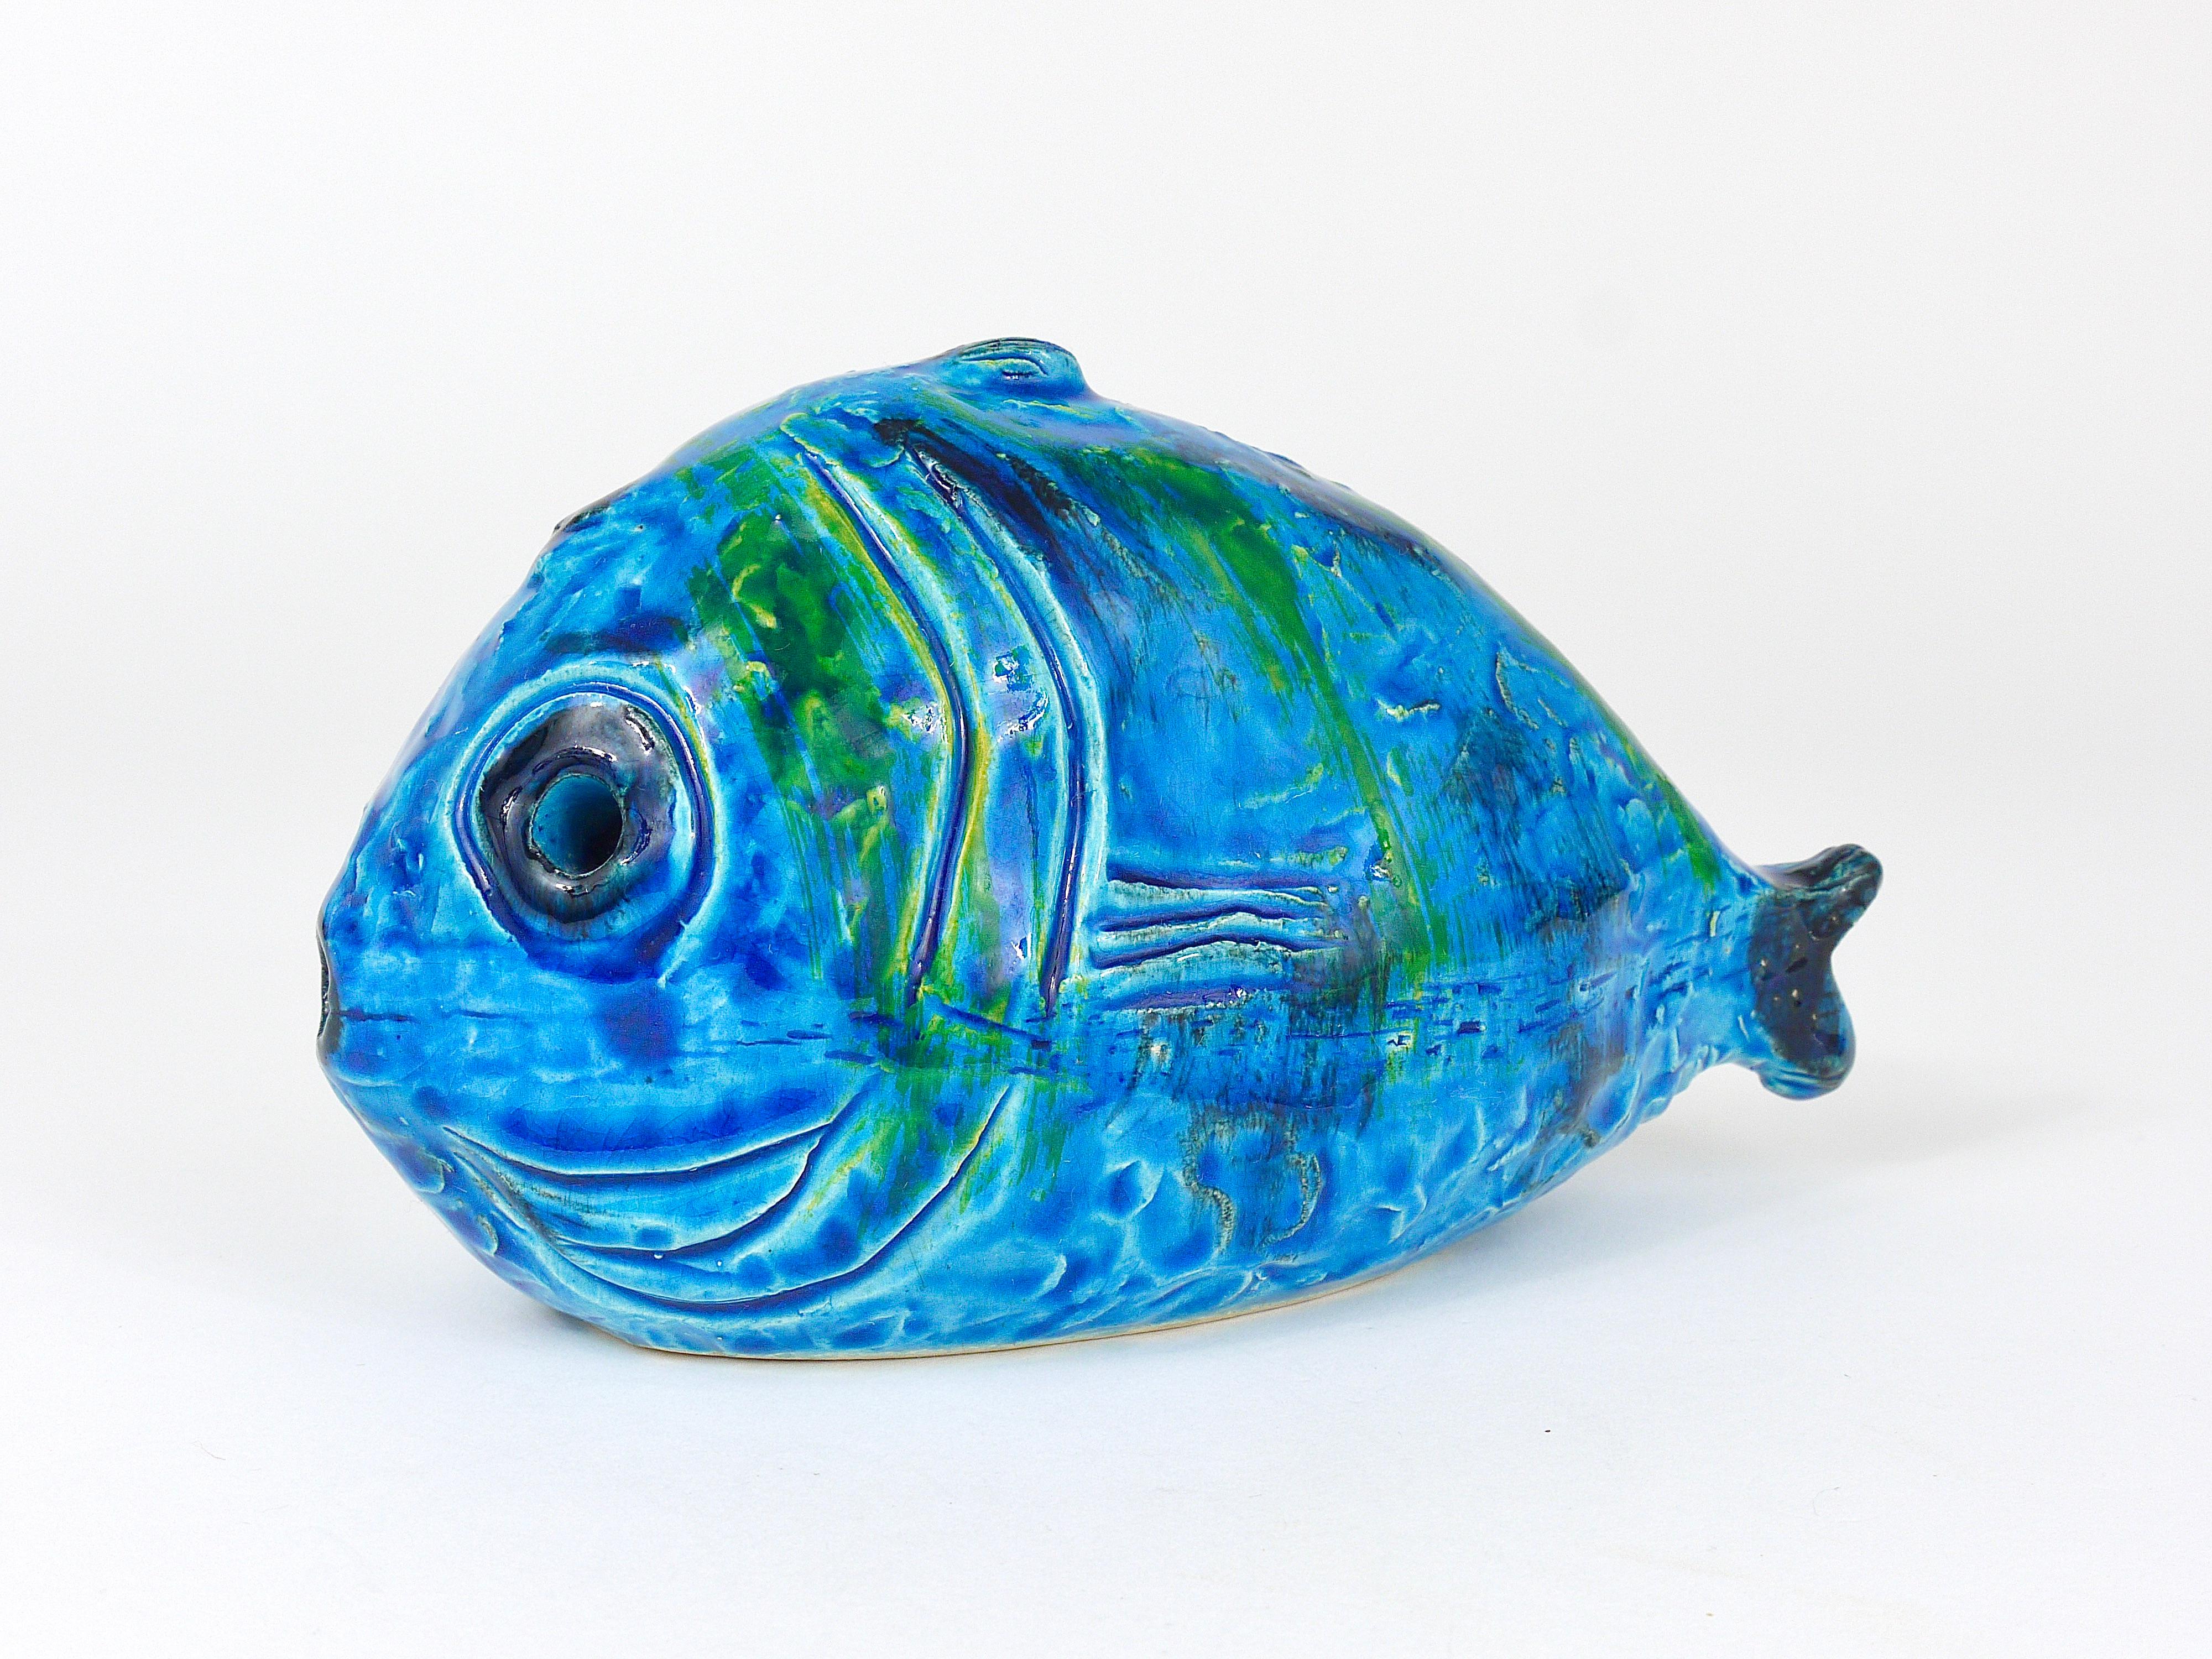 Aldo Londi Bitossi Rimini Blue Glazed Fish Sculpture Figurine, Italy, 1950s In Good Condition For Sale In Vienna, AT